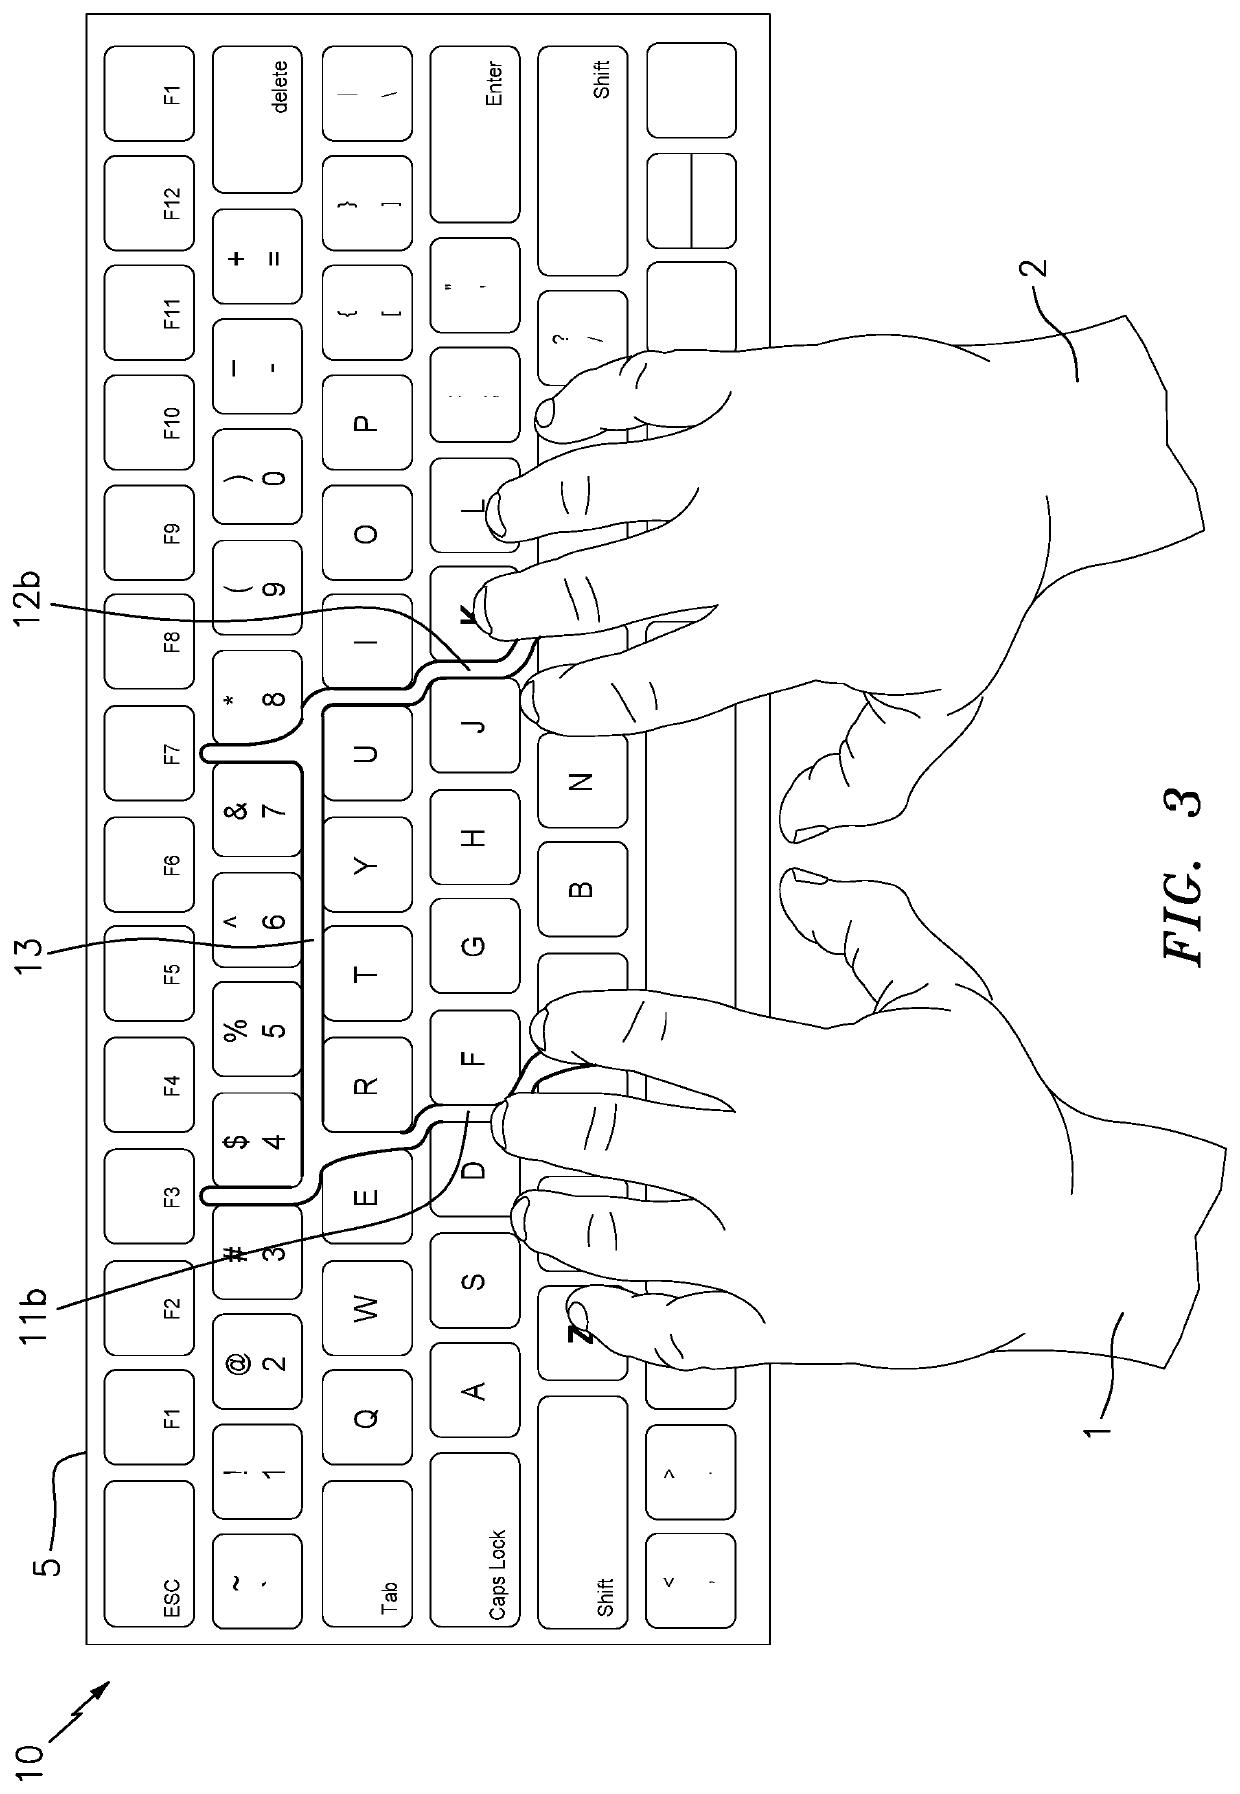 Keyboard finger guide